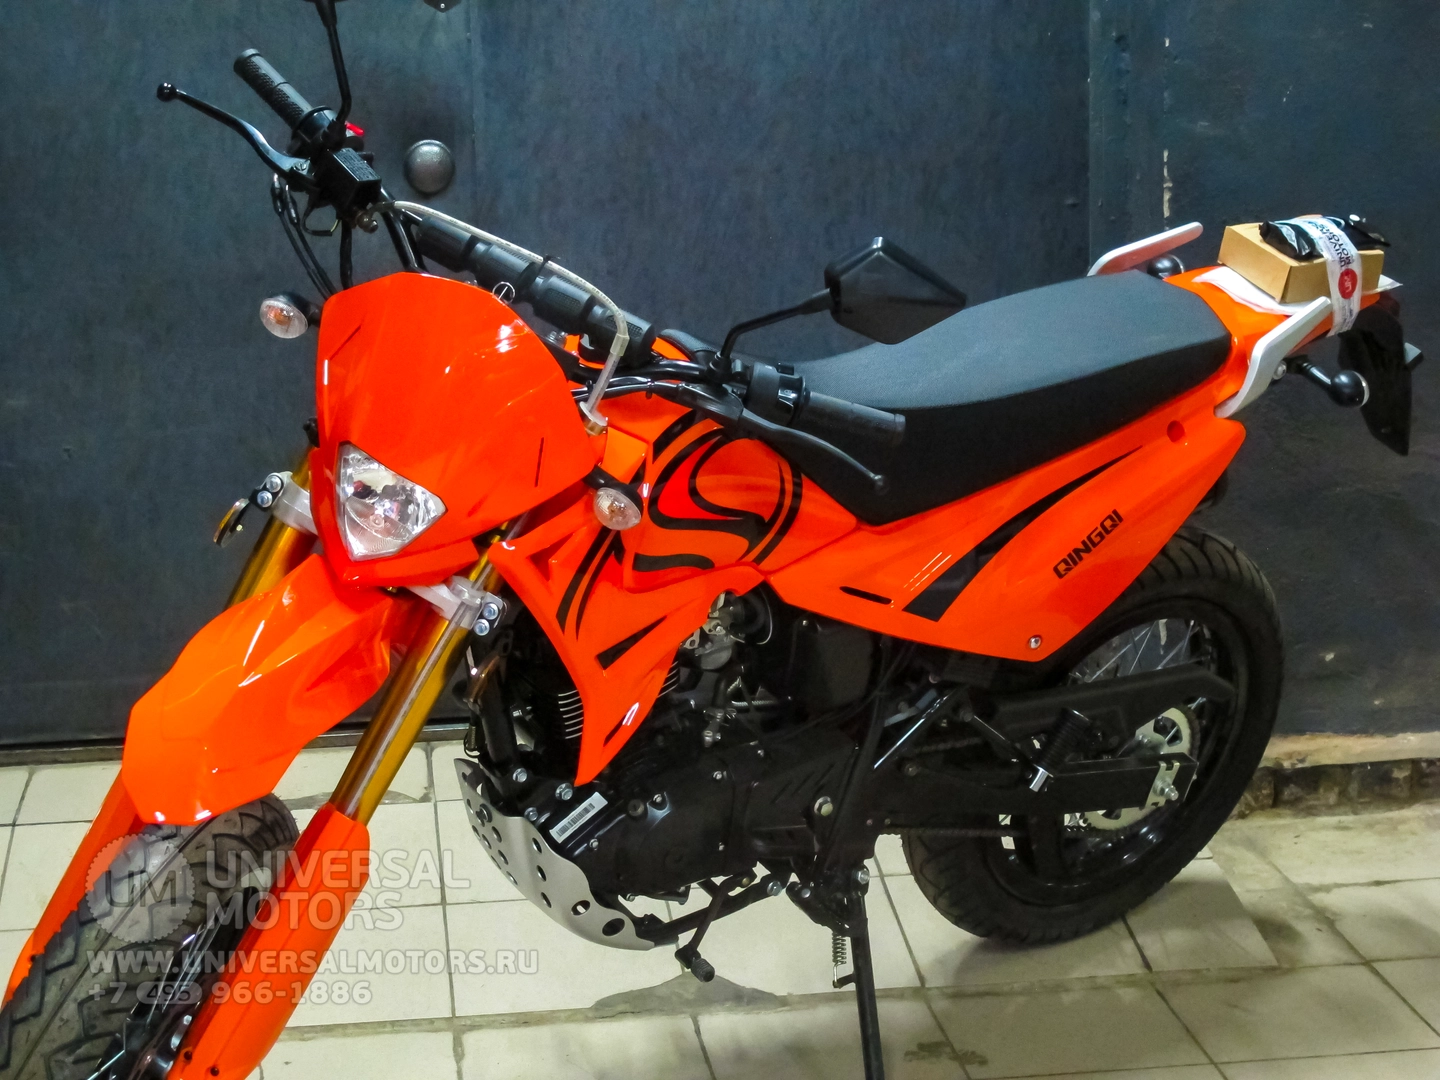 Мотоцикл Baltmotors Motard 200DD (фабрика Qingqi), 524585672357957839